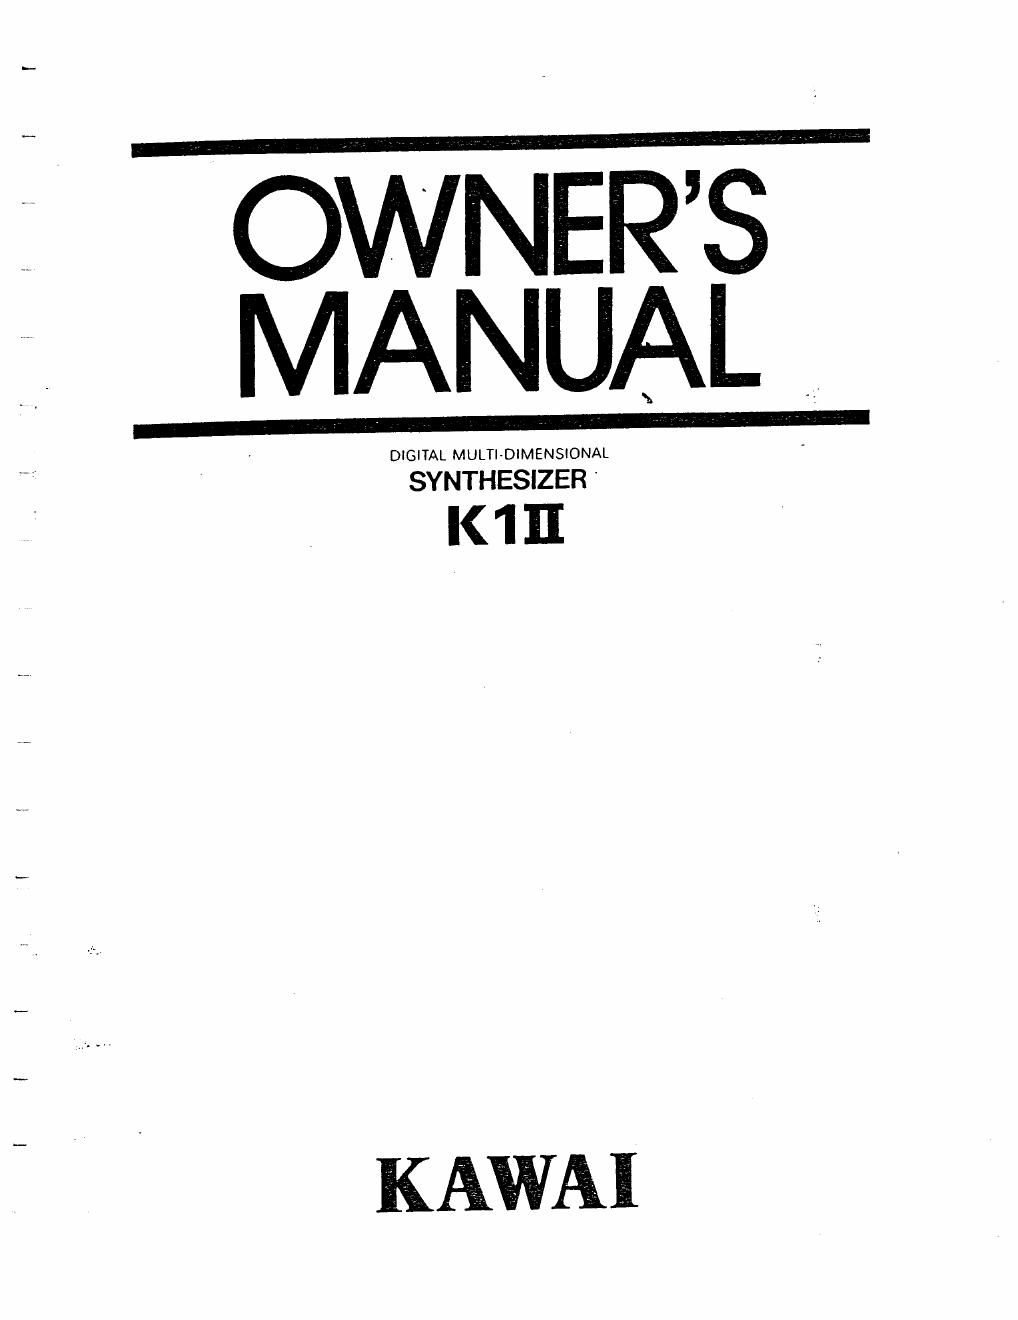 kawai k1 ii synthesizer owner manual